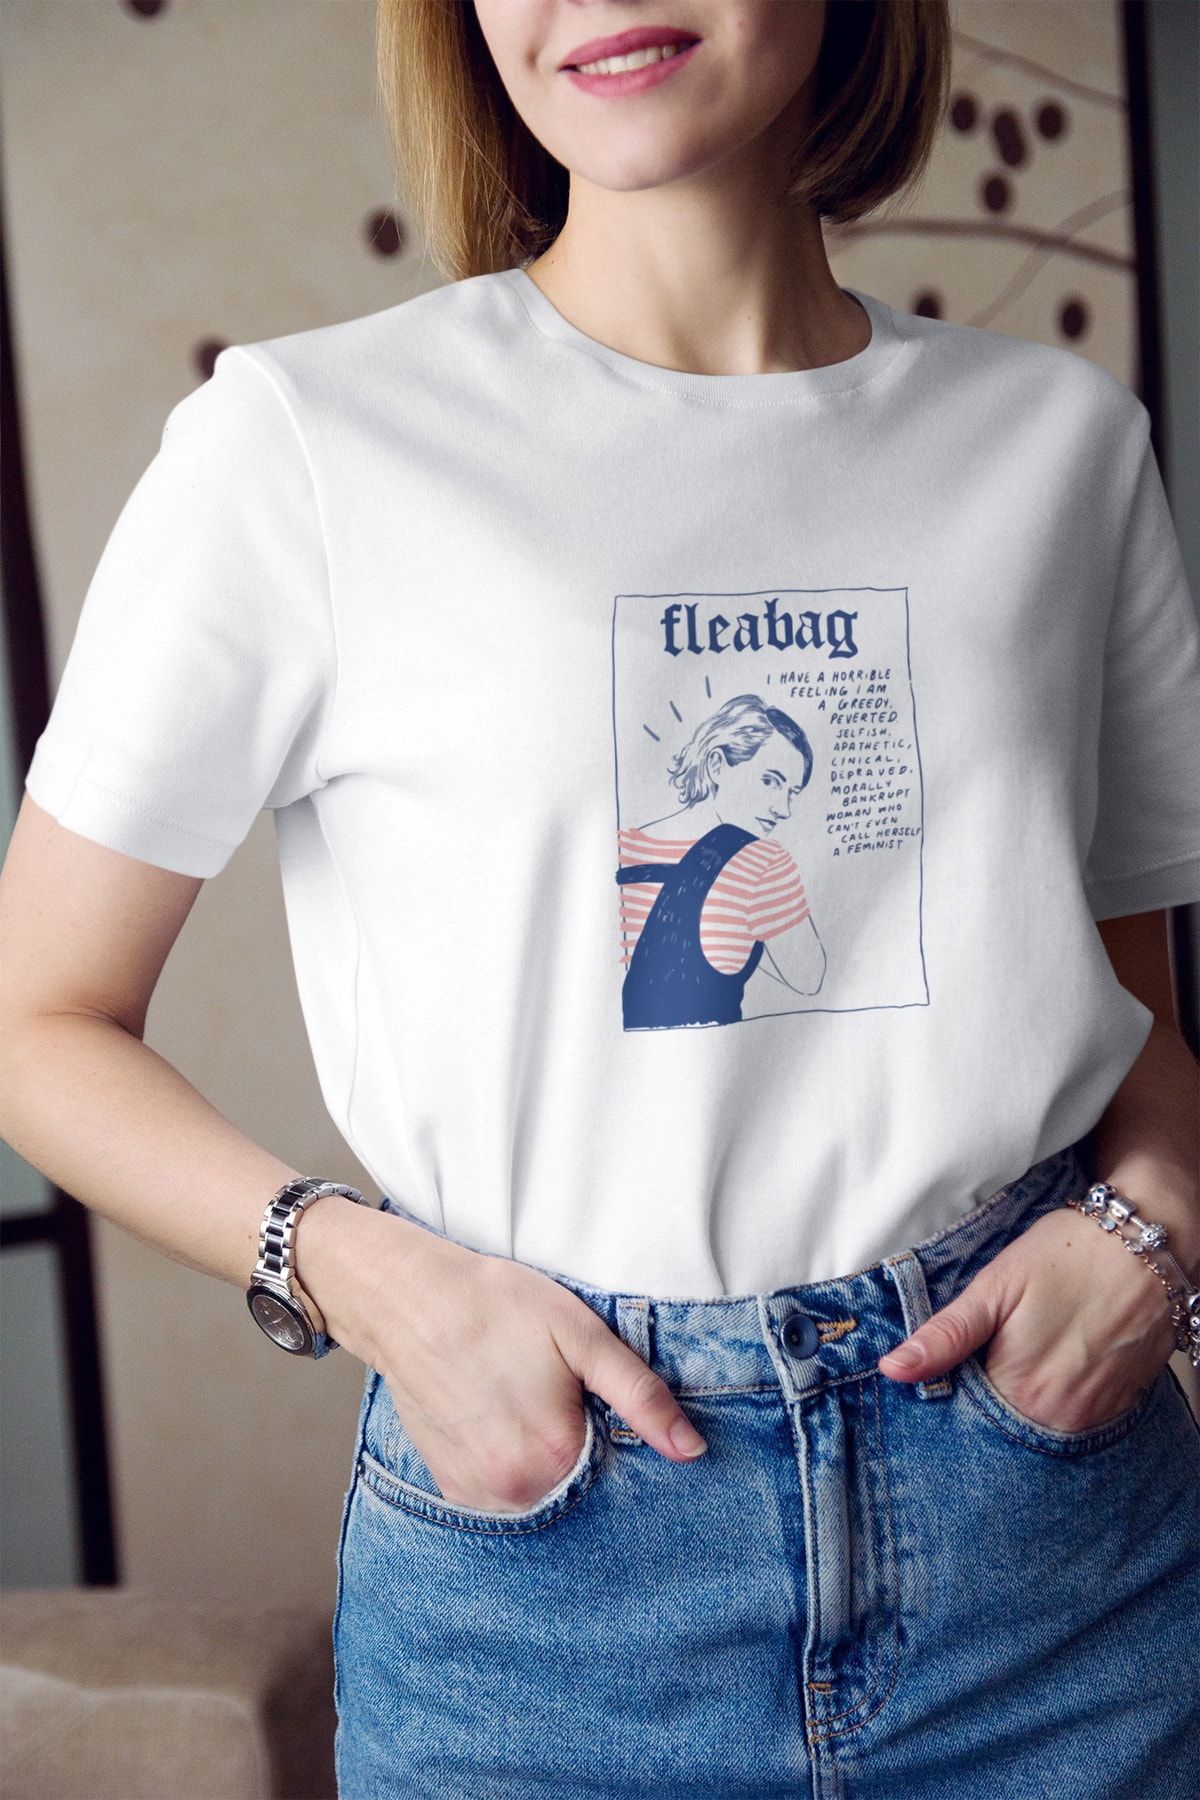 Kio Tasarım Fleabag Yazı Baskılı Tişört Kadın %100 Pamuk